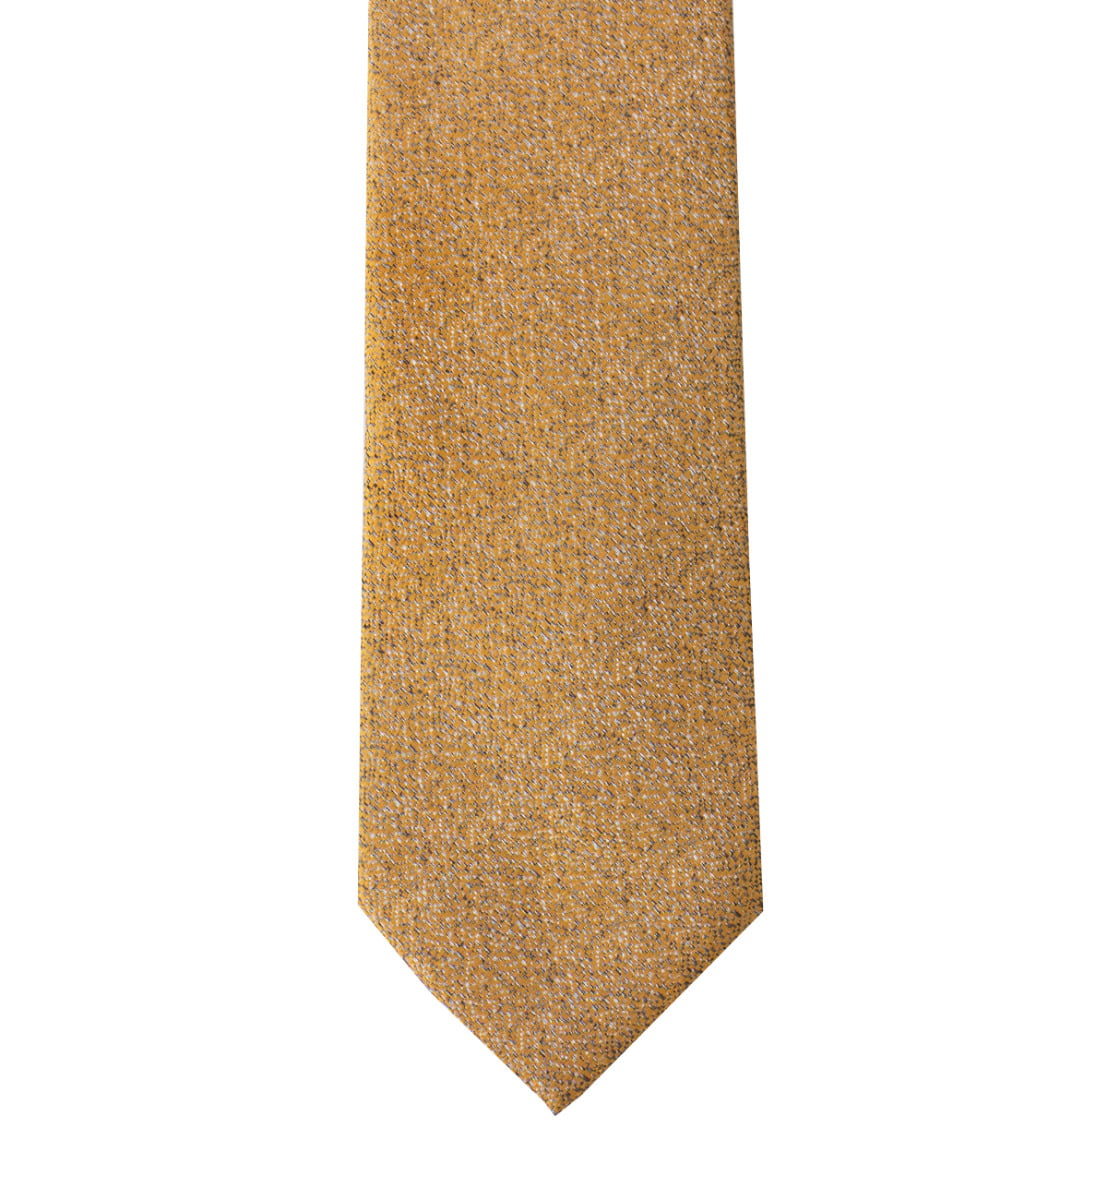 Cravatta uomo bronzo effetto melange 8cm di larghezza made in italy